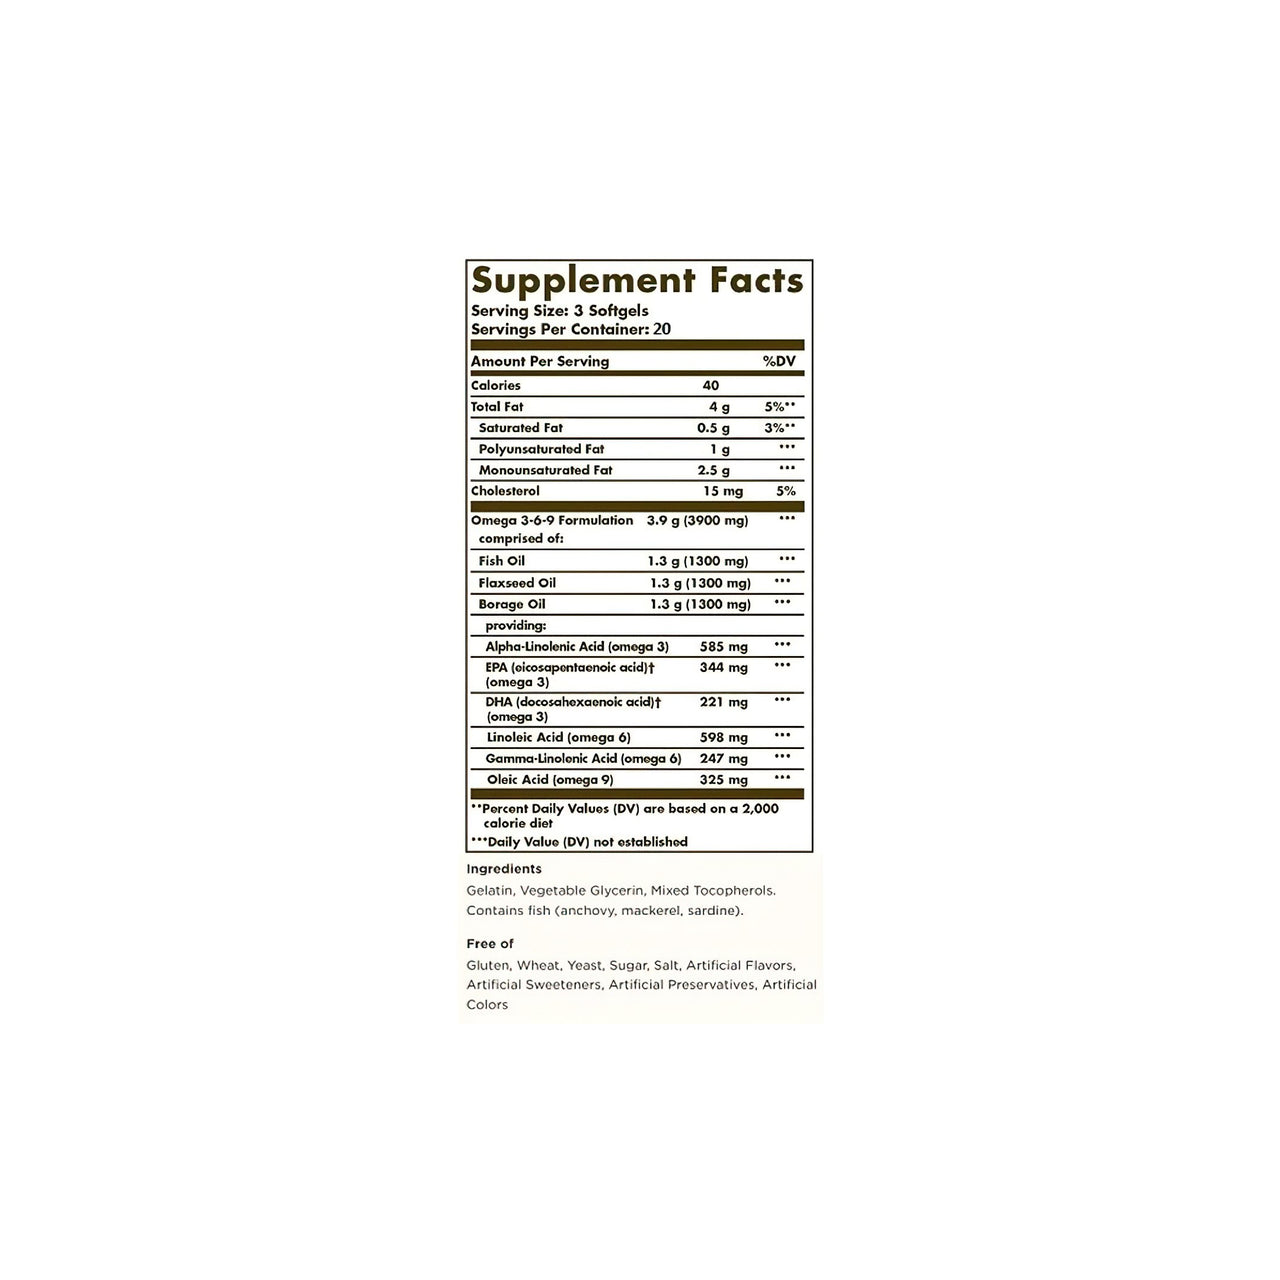 Étiquette de complément alimentaire Solgar présentant des acides gras essentiels et des oméga 3-6-9 en 60 gélules sur fond blanc.